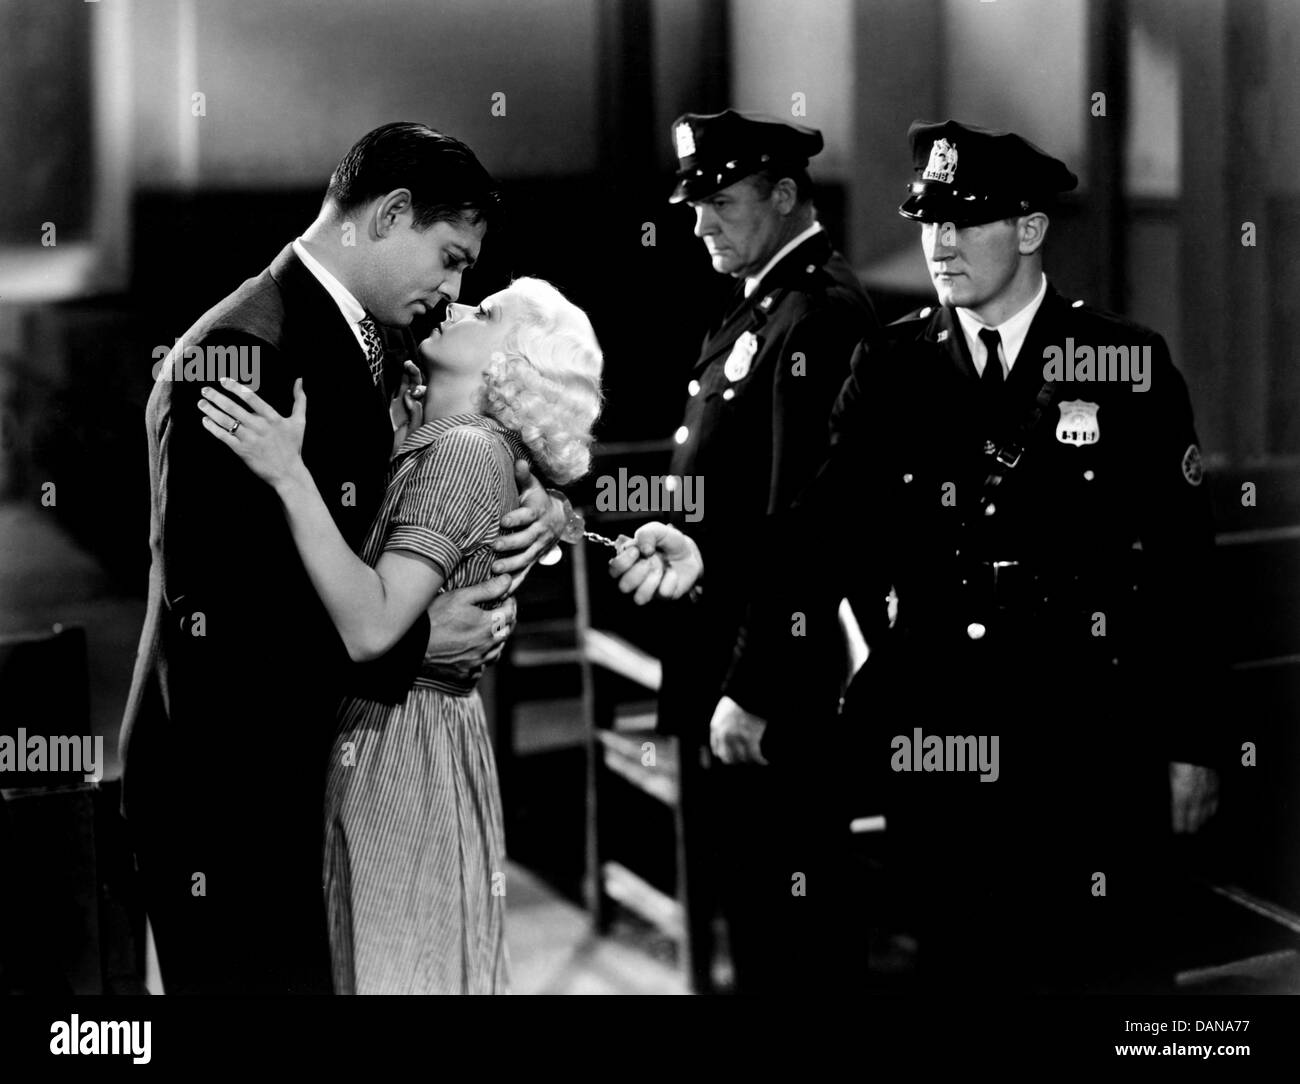 Maintenez votre homme (1933) Clark Gable, JEAN HARLOW, SAM WOOD (DIR) HDYM 005 COLLECTION MOVIESTORE LTD Banque D'Images